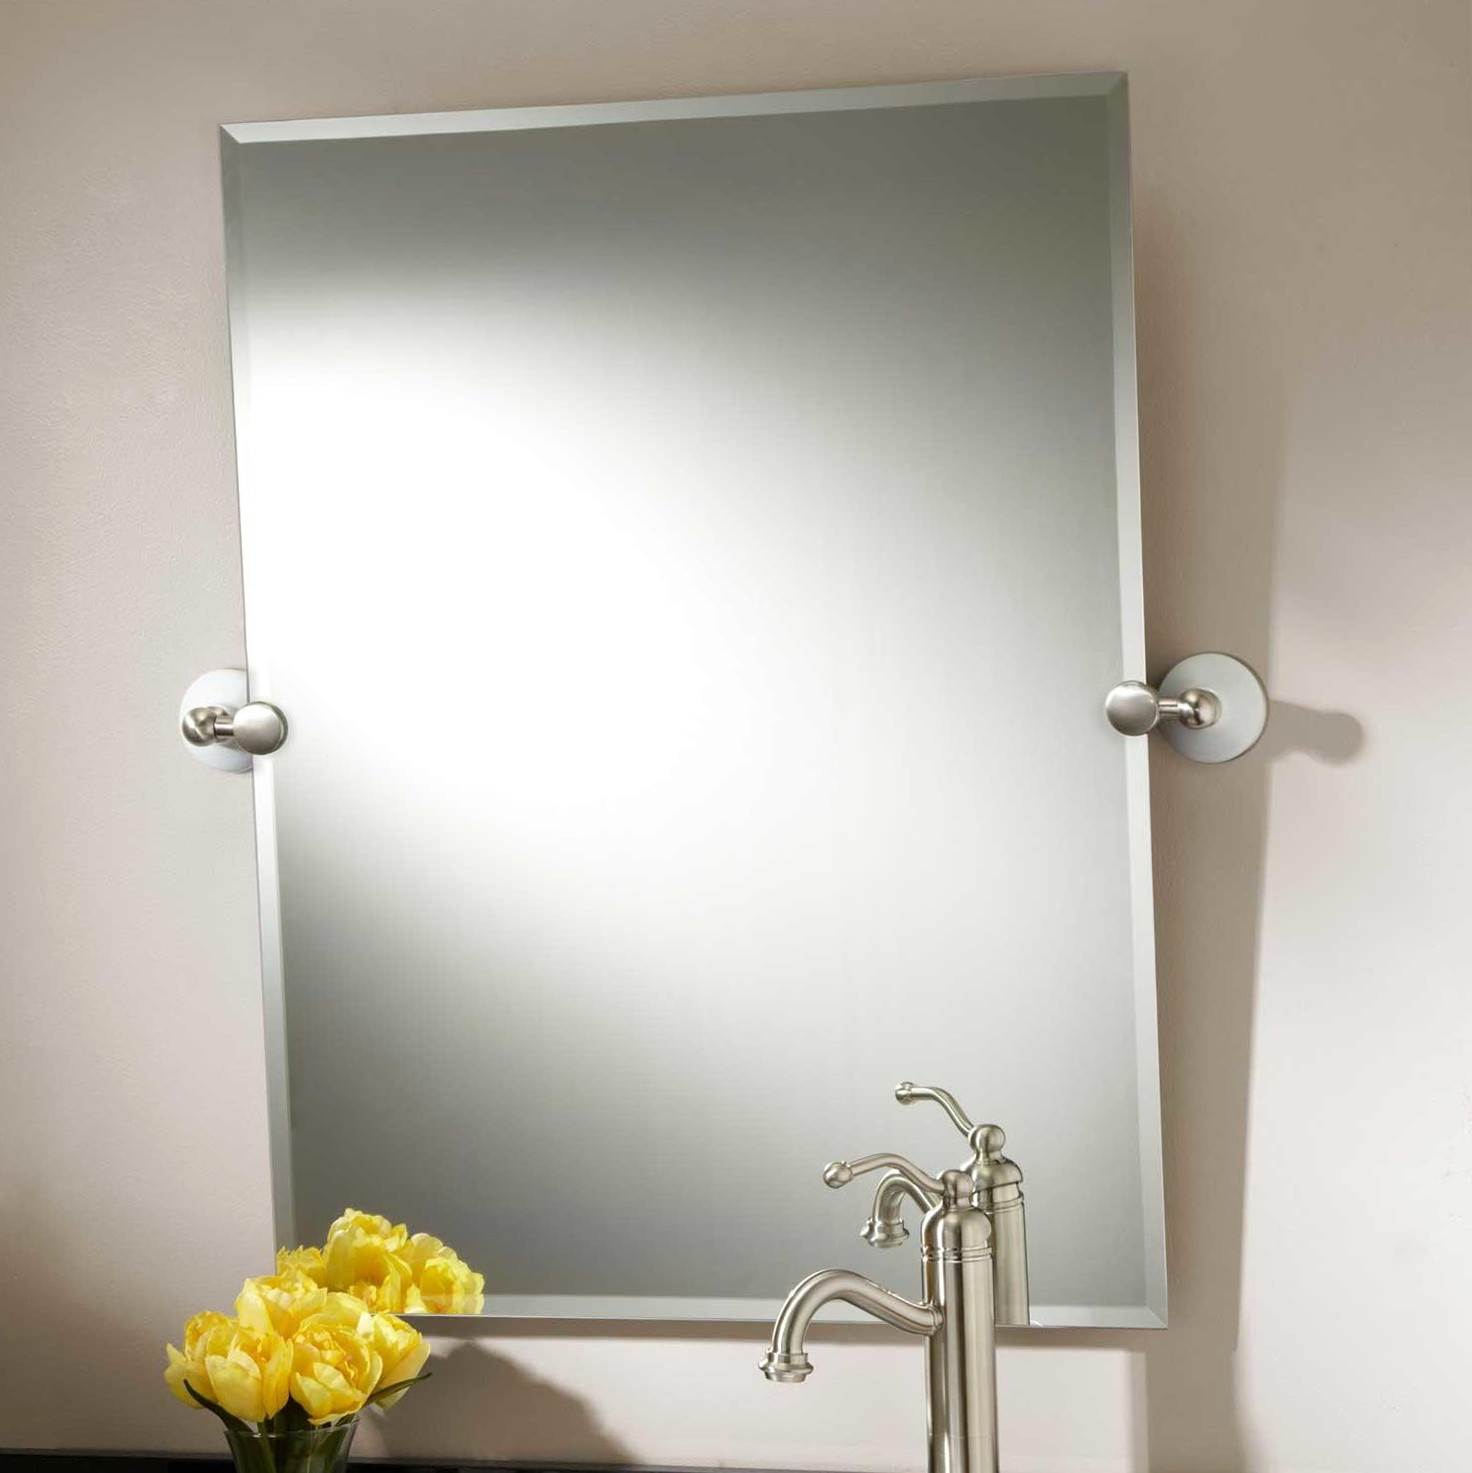 Brushed Nickel Bathroom Mirrors
 Brushed Nickel Framed Bathroom Mirror